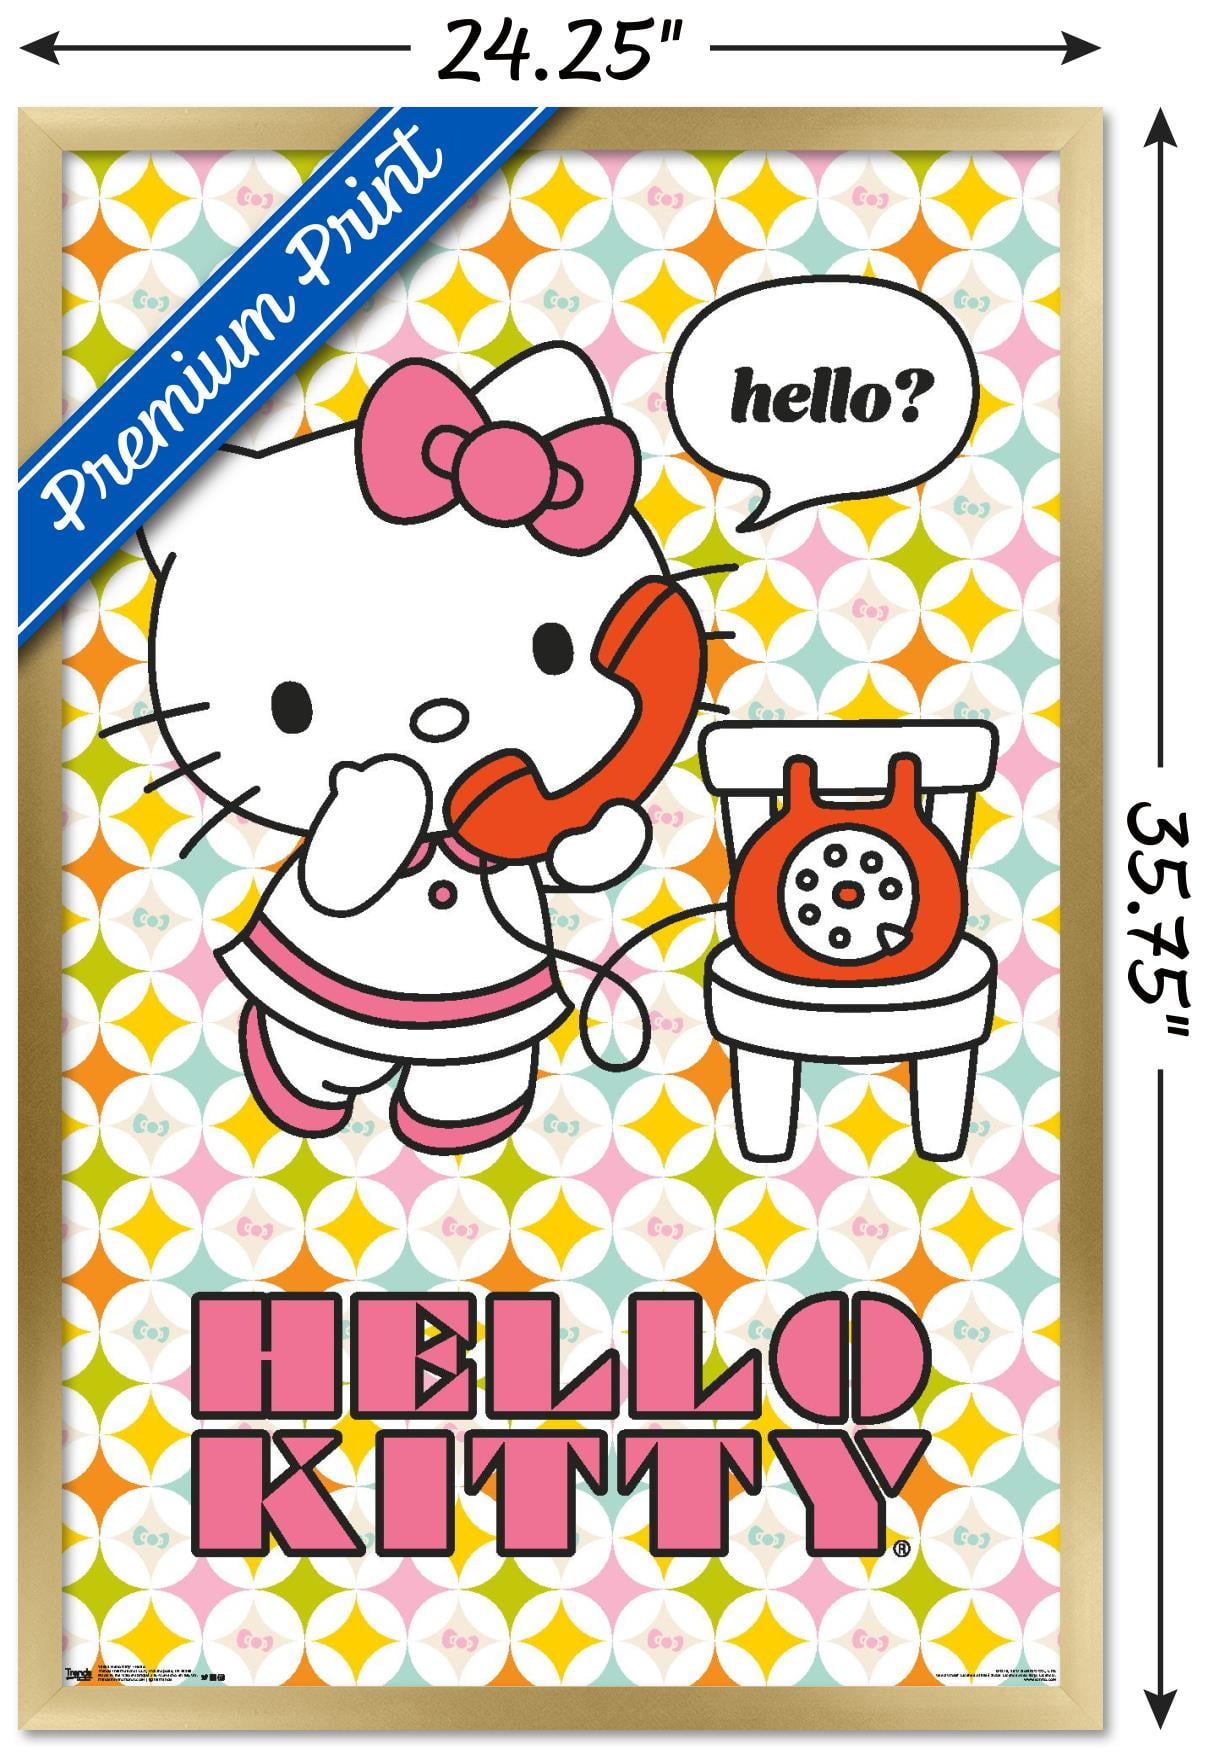 Hello Kitty Cartoon Cat Kitten Anime Art Wall Indoor Room Poster - POSTER  20x30